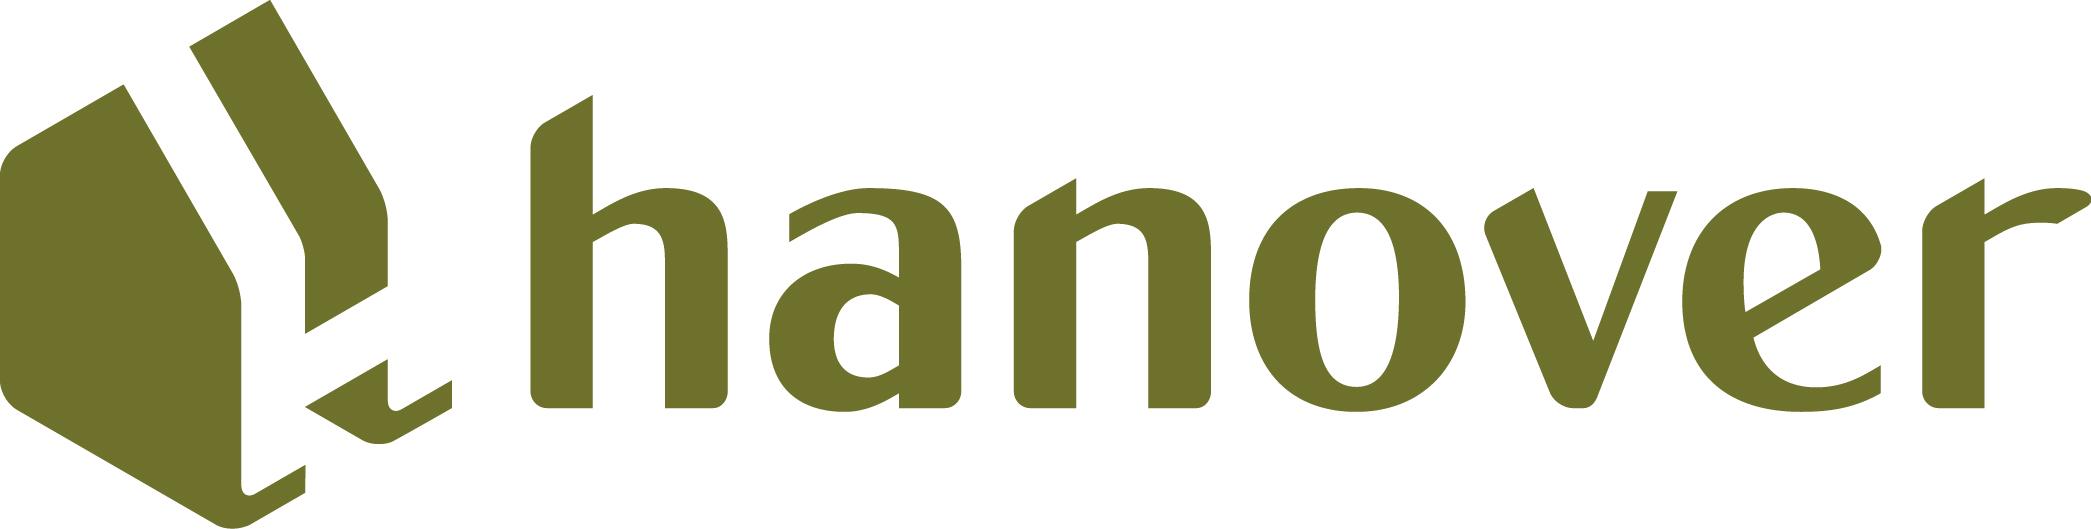 Hanover Logo - hanover-logo-dark-green_letter - Sustainable Homes